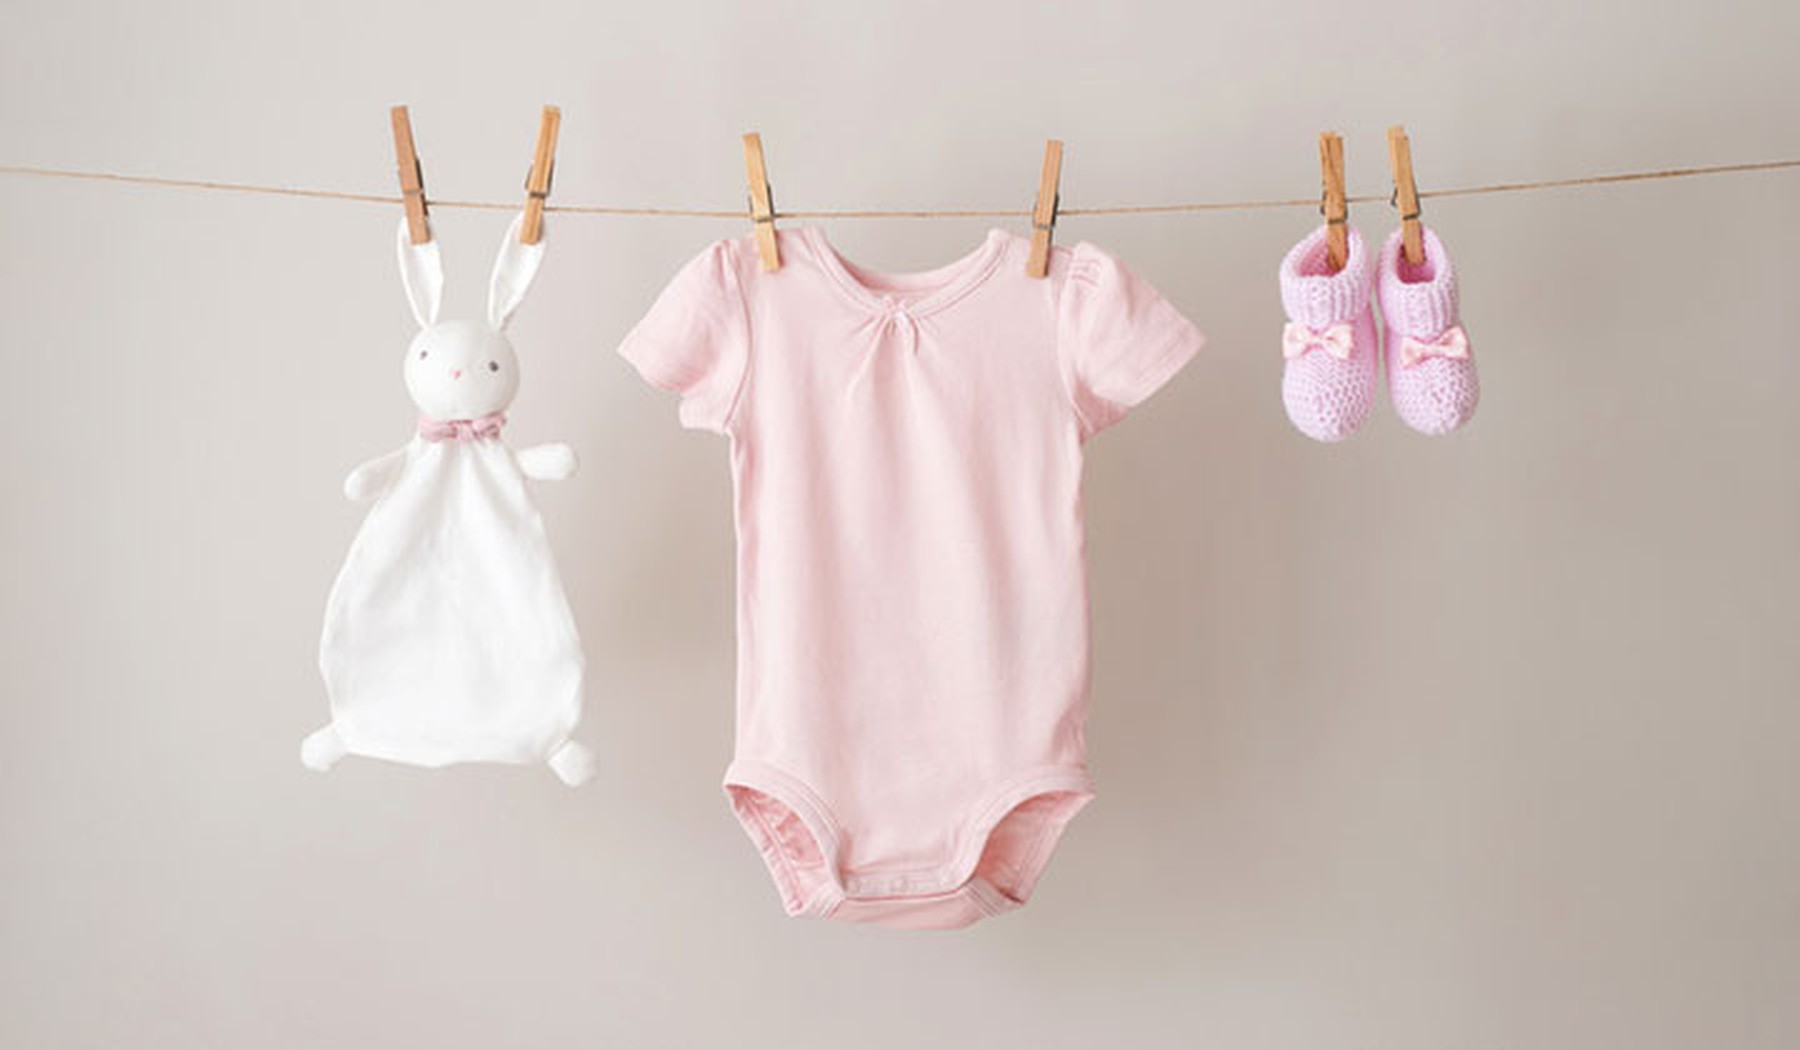 Bodie rosa de bebé, zapatos y peluche tendidos en una cuerda con pinzas